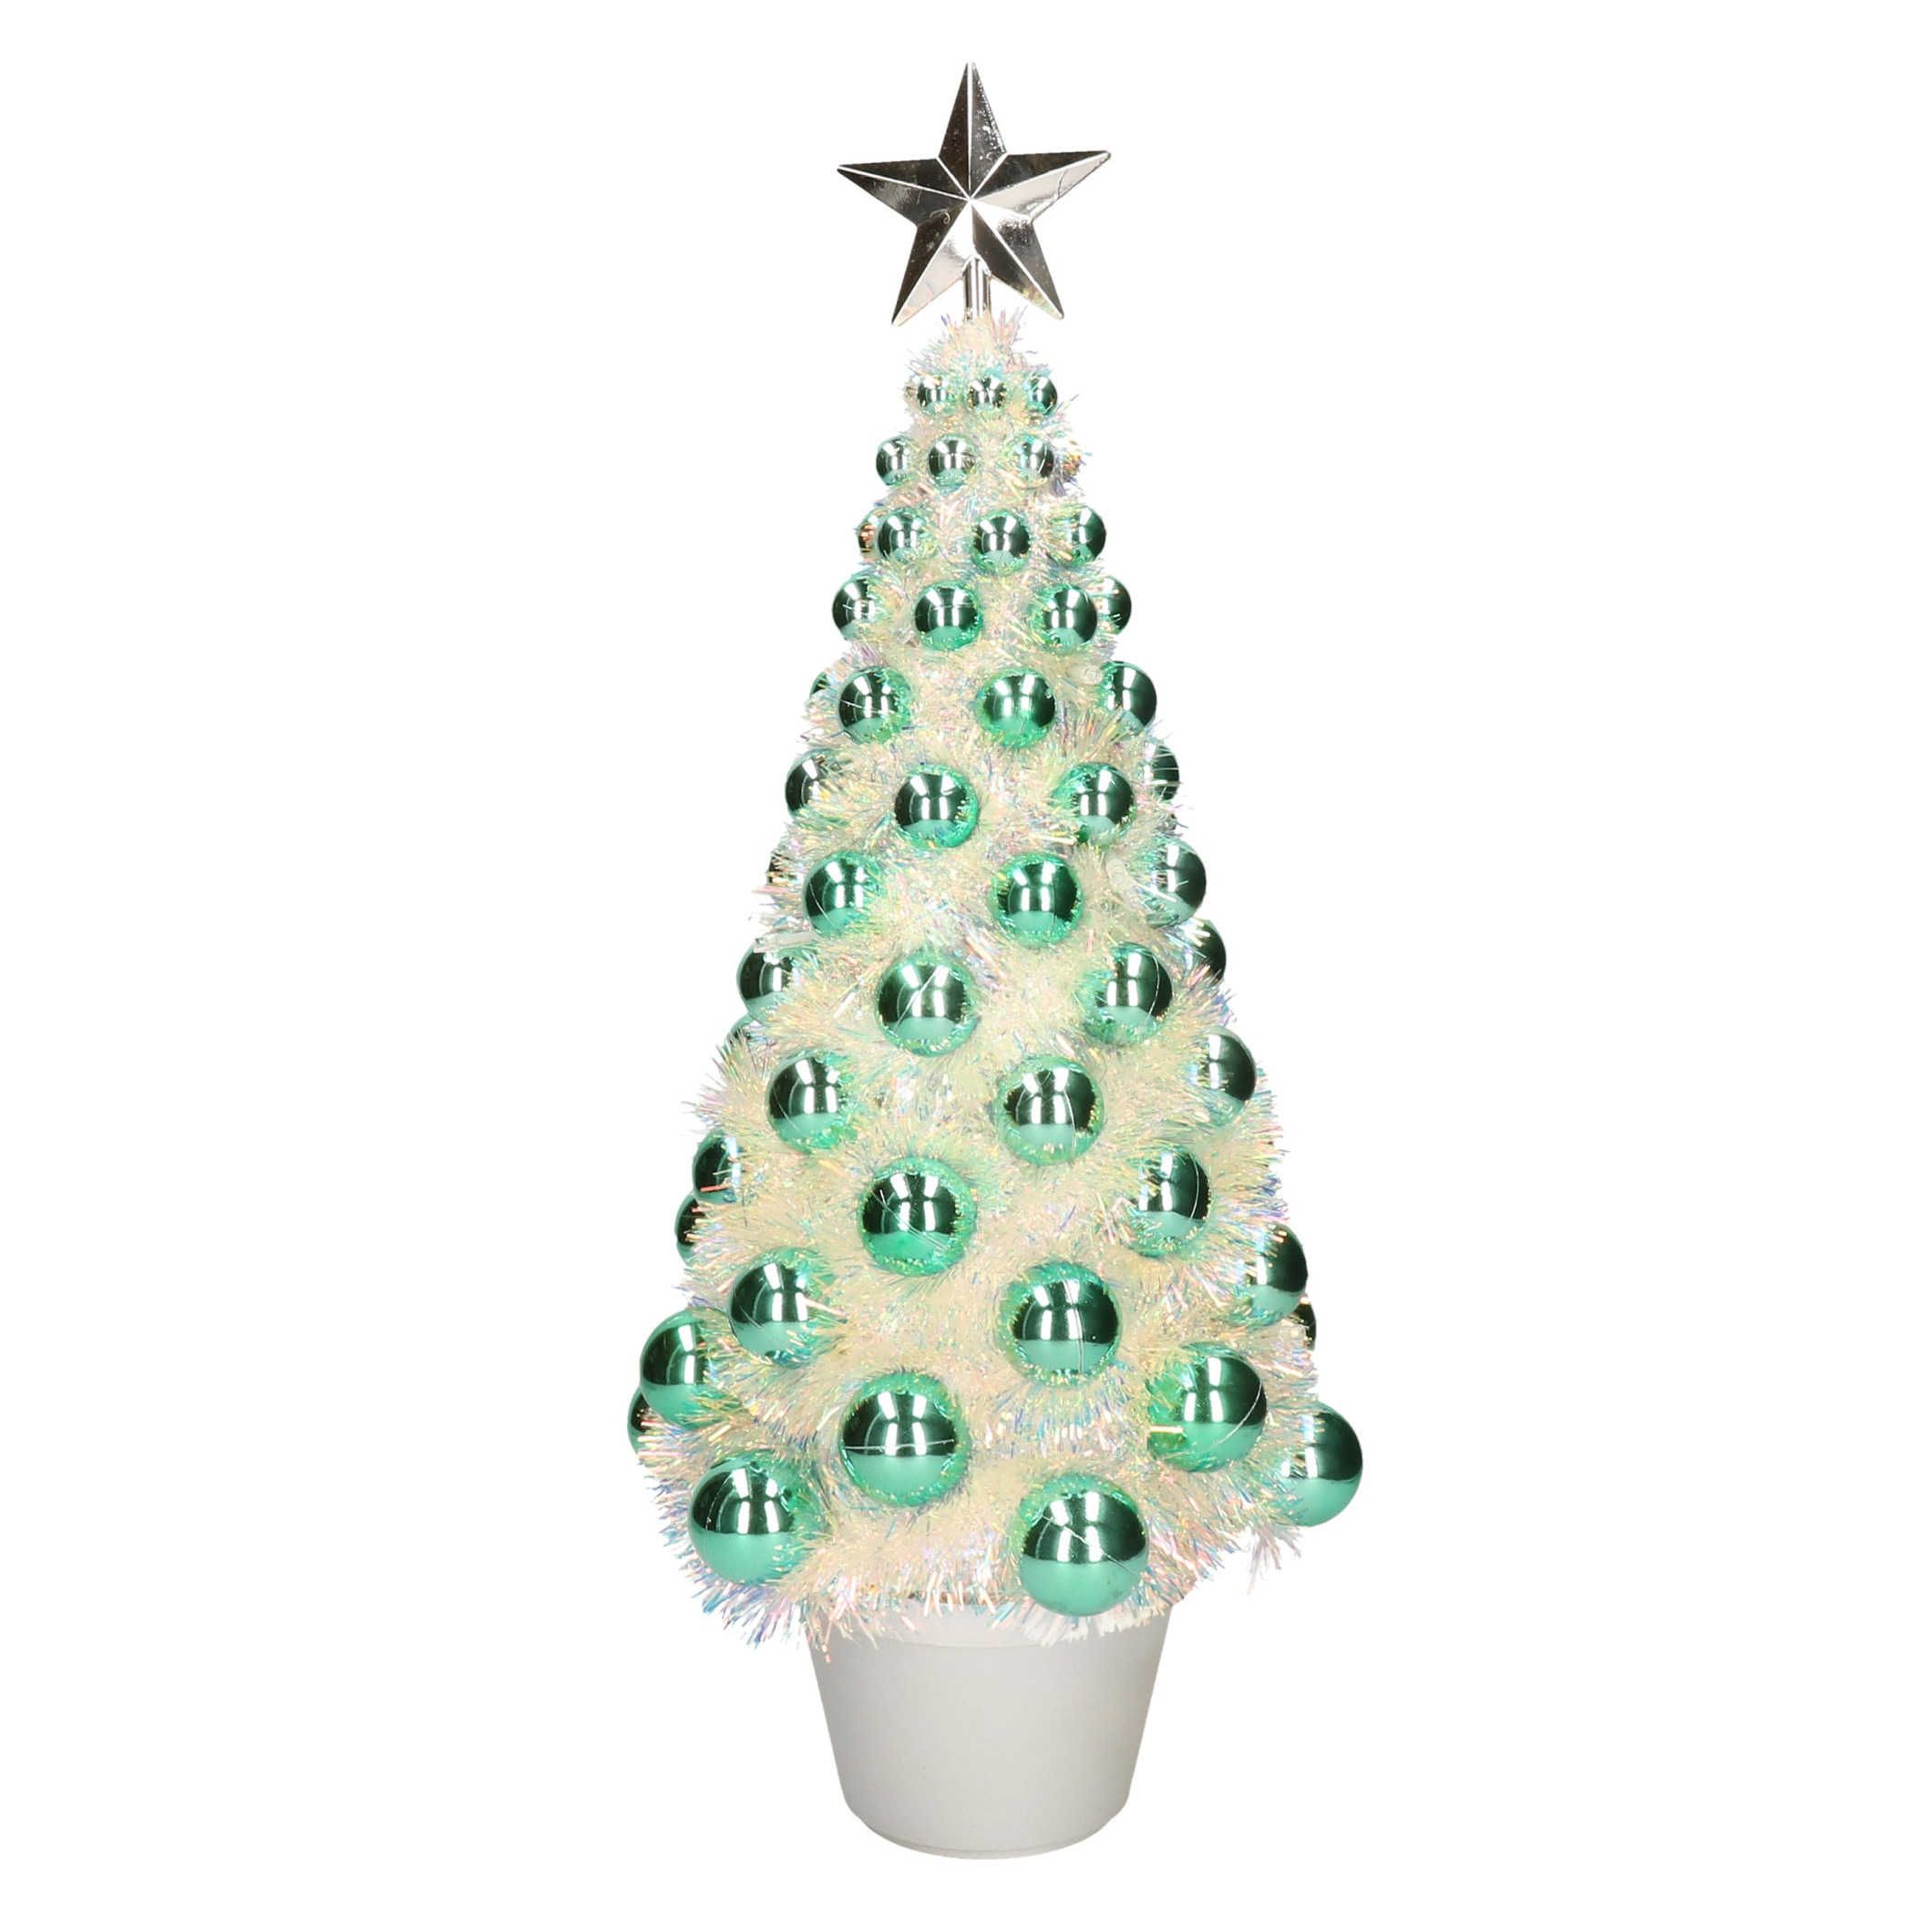 Complete mini kunst kerstboom - kunstboom groen met lichtjes 50 cm